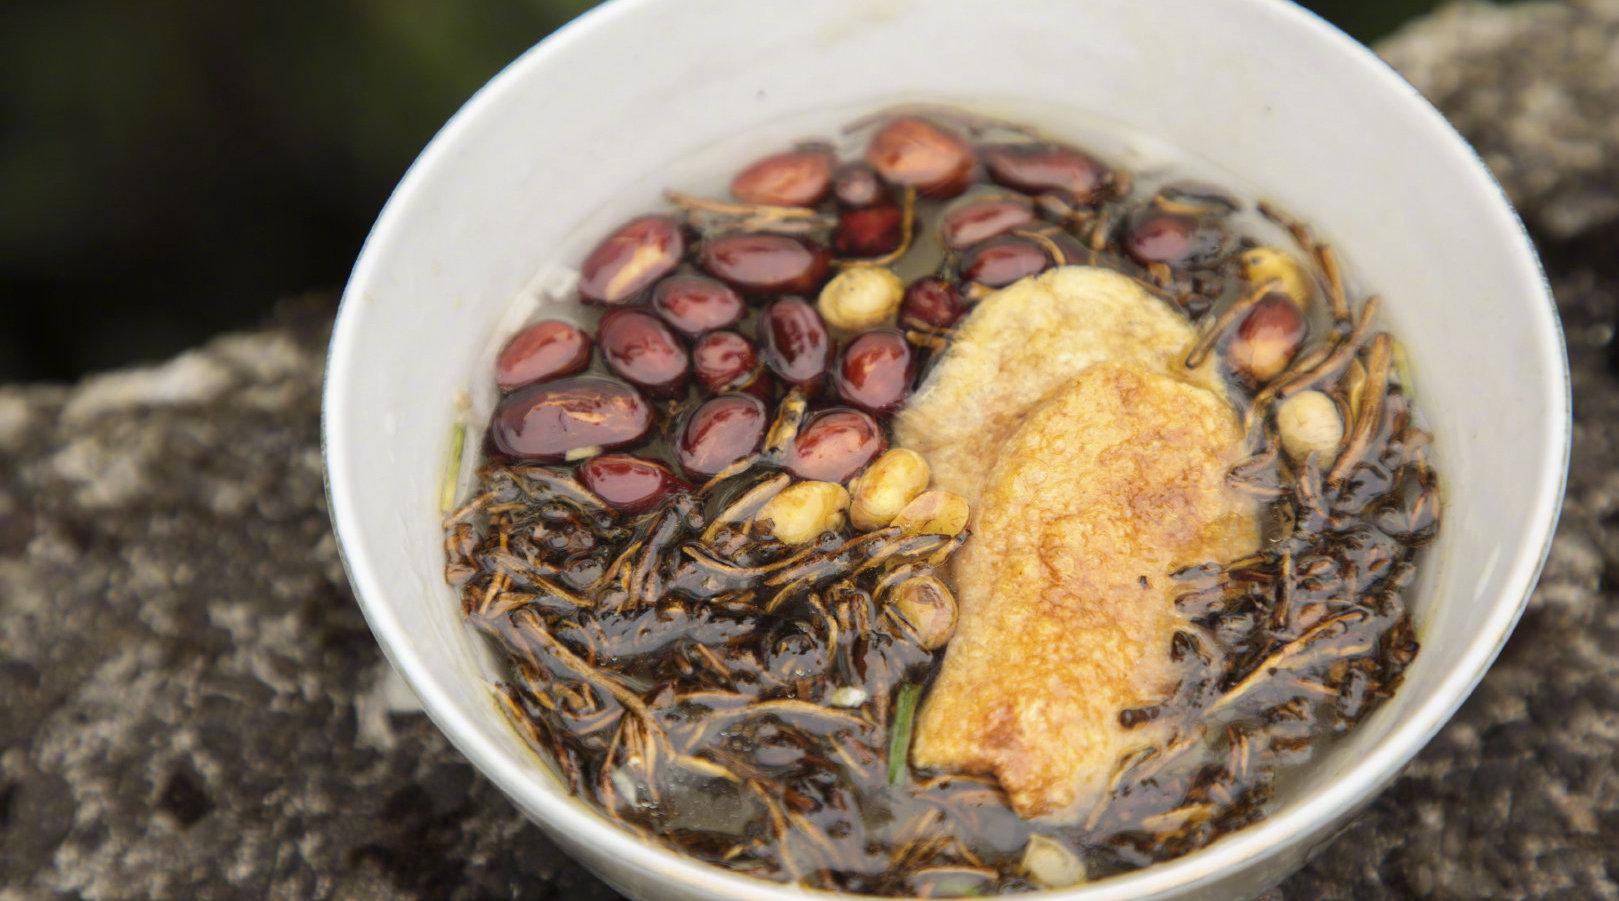 逛庙会品油茶 首届城步油茶文化艺术节将于年底举行 - 原创 - 华声文旅 - 华声在线